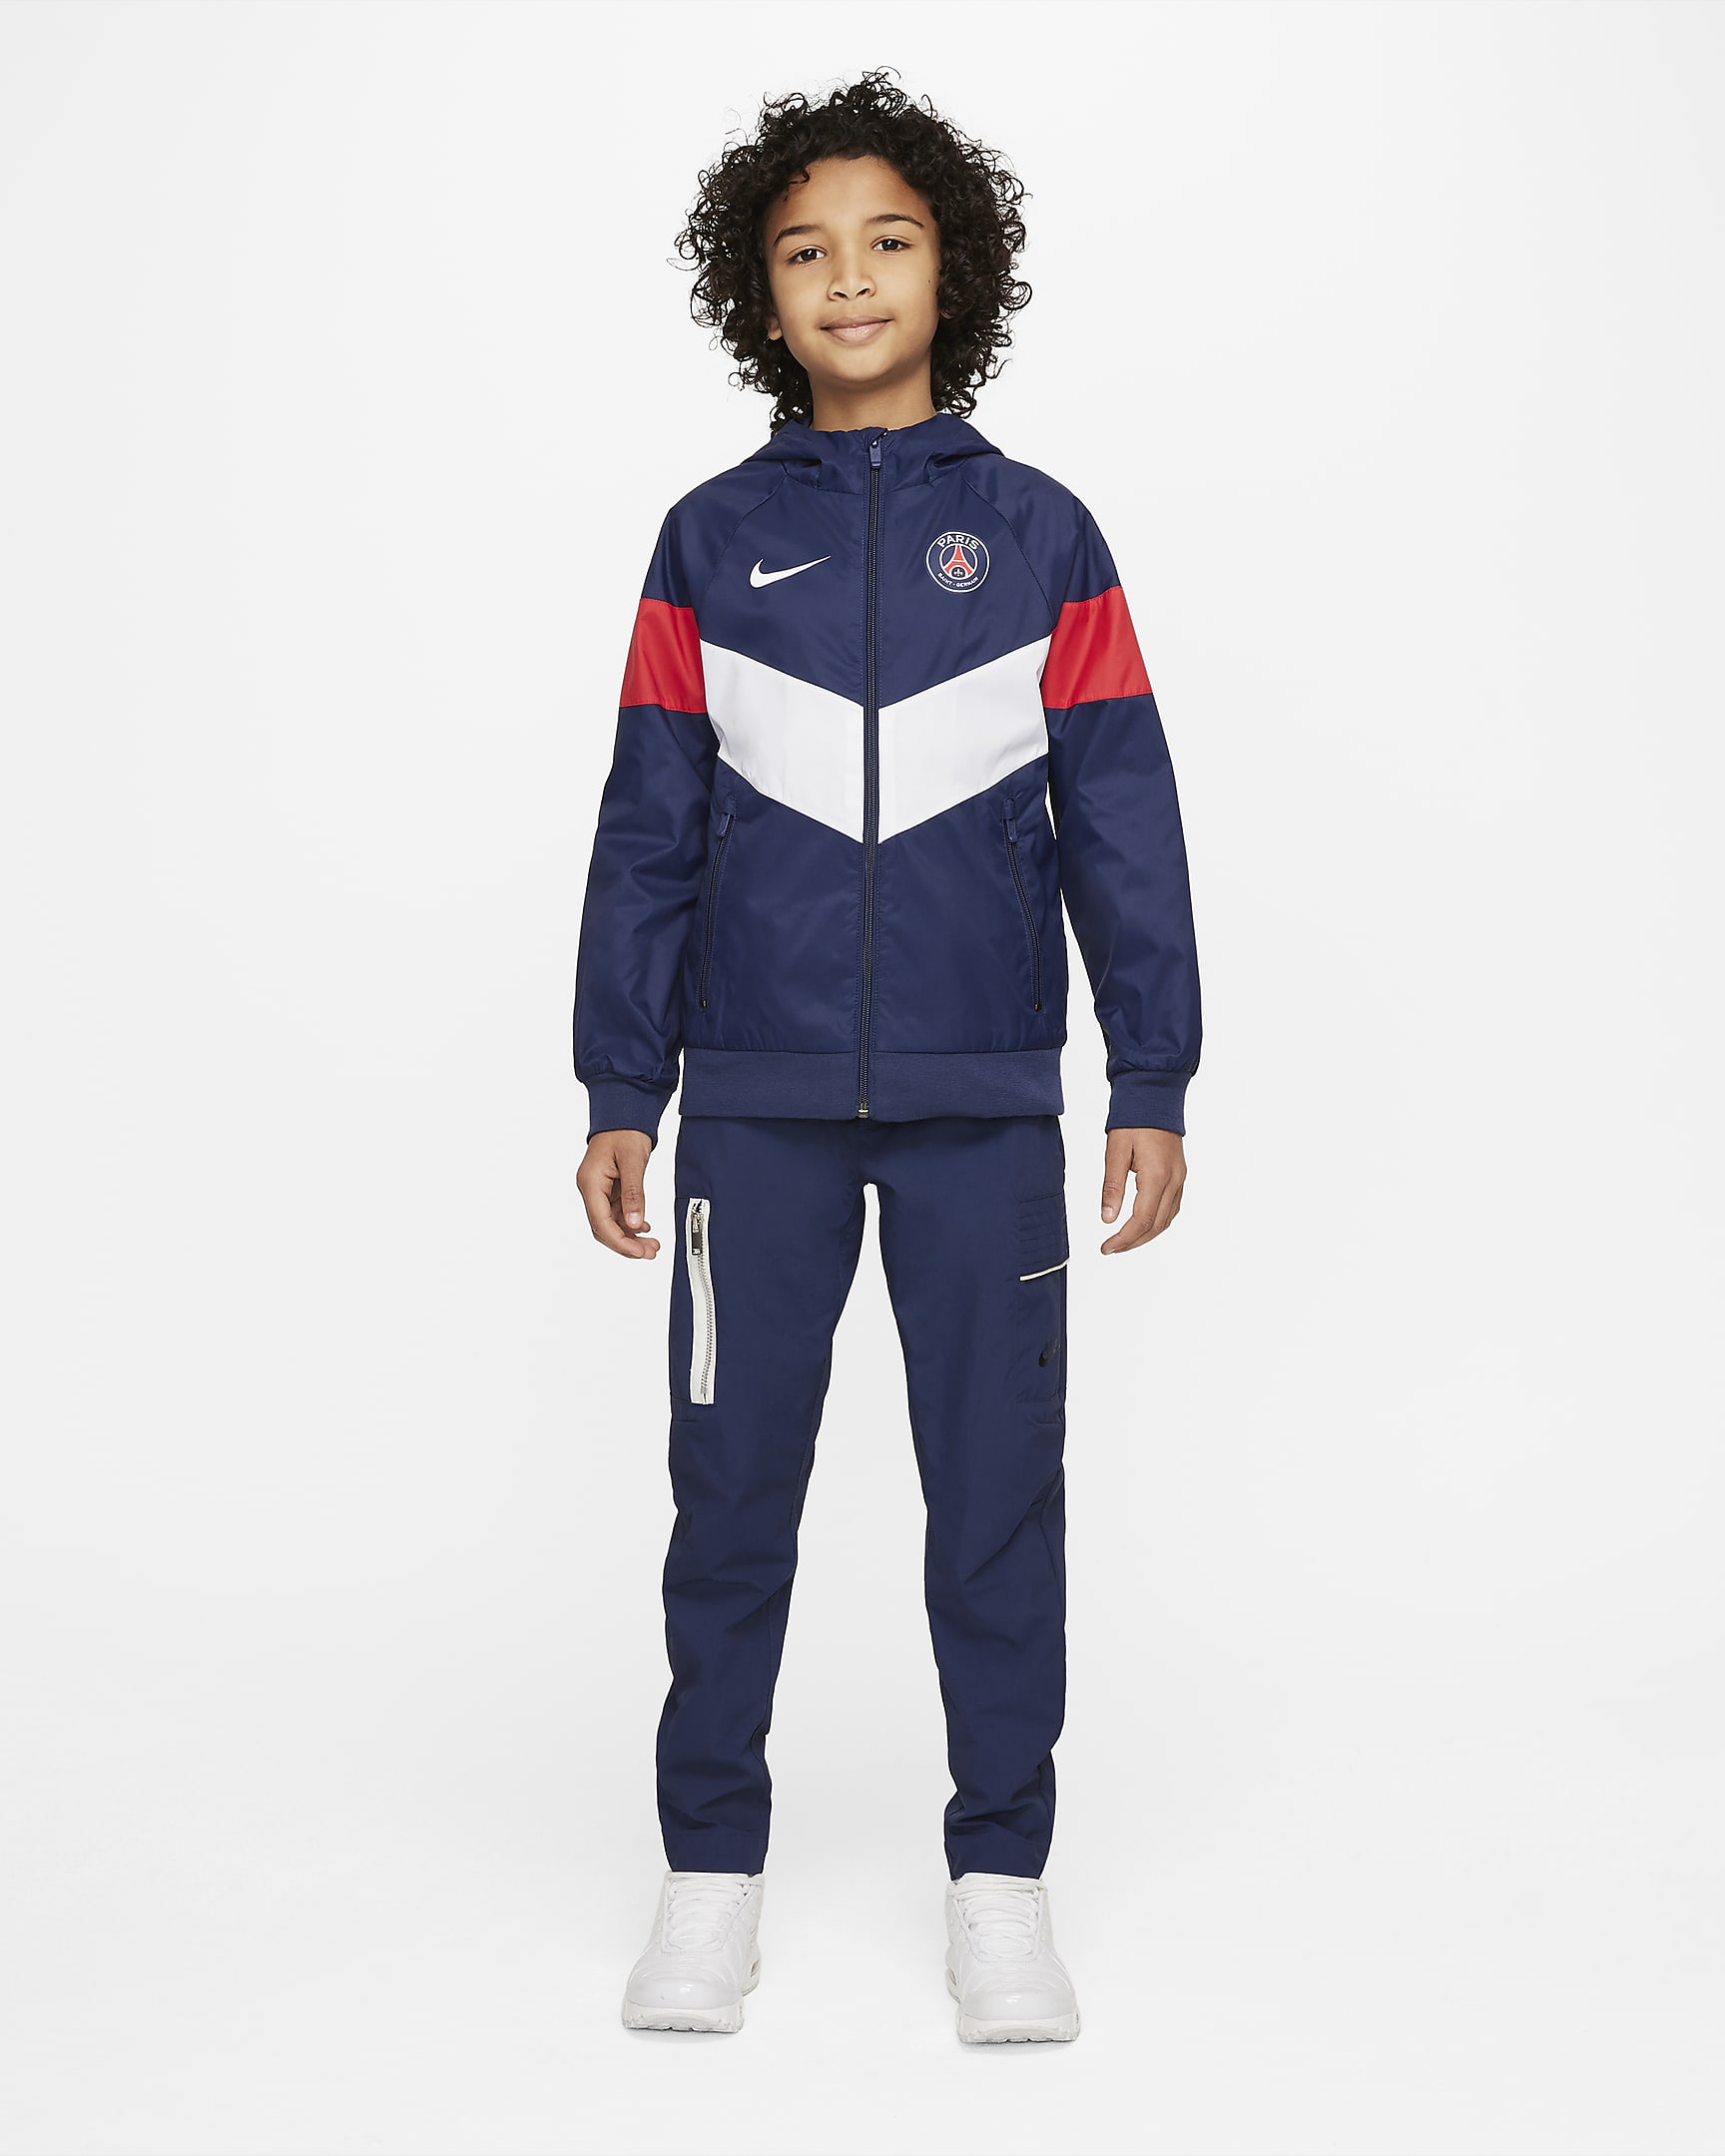 Paris Saint-Germain Big Kids' Hooded Jacket. Nike.com